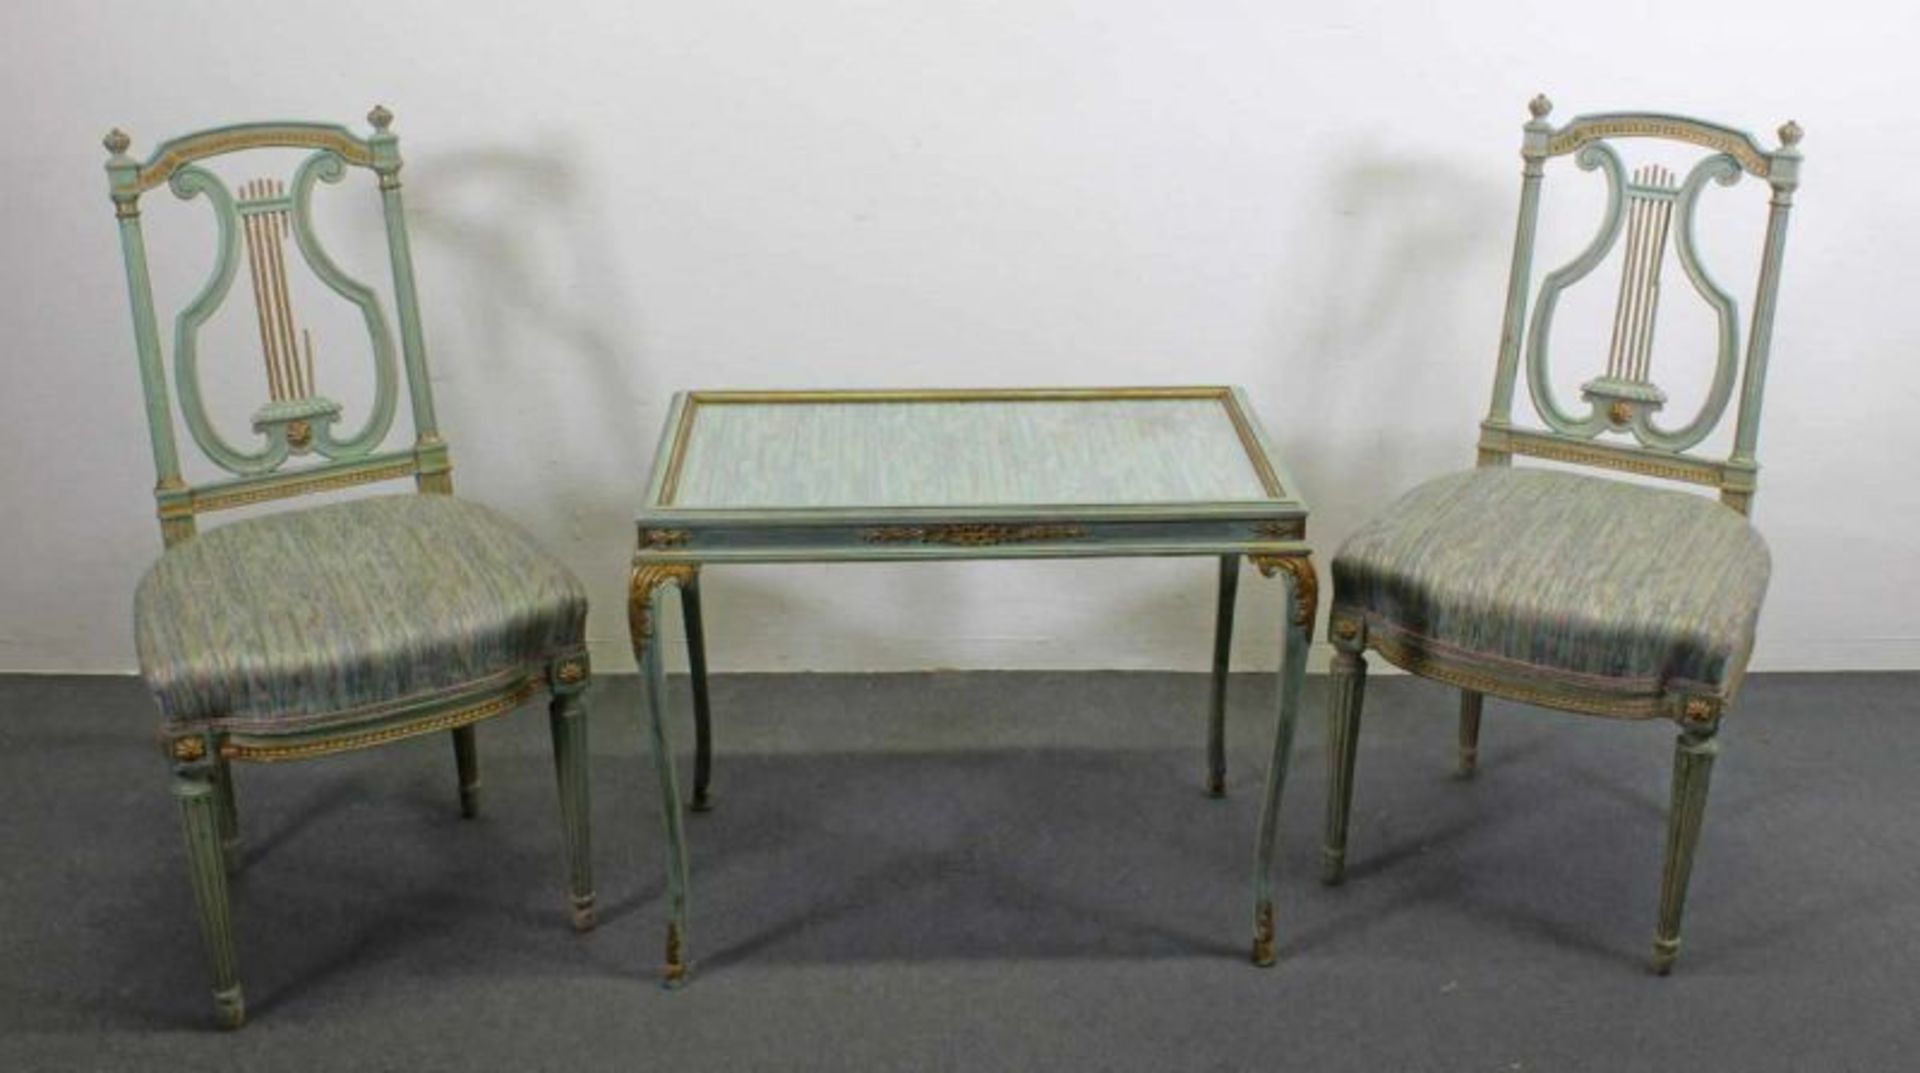 Kleiner Tisch mit zwei Stühlen, Louis Seize-Stil, 20. Jh., grünlich/gold gefaßt, Rückenlehnen der